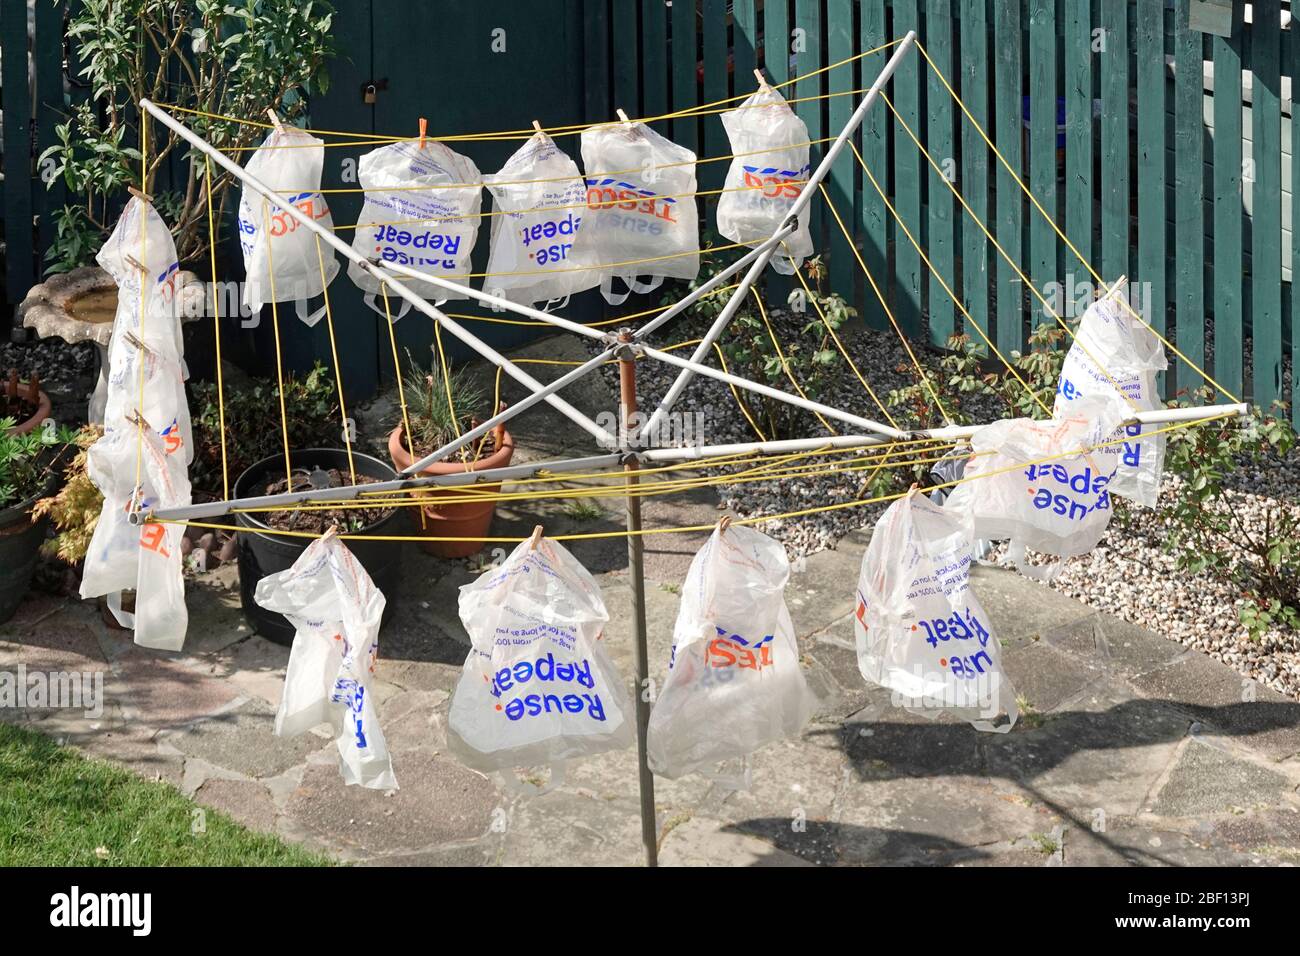 Sac de transport réutilisable en plastique recyclé Tesco séchage à l'extérieur après lavage à l'eau savonneuse comme mesure de précaution pour coronavirus fourni avec livraison en ligne de shopping Royaume-Uni Banque D'Images